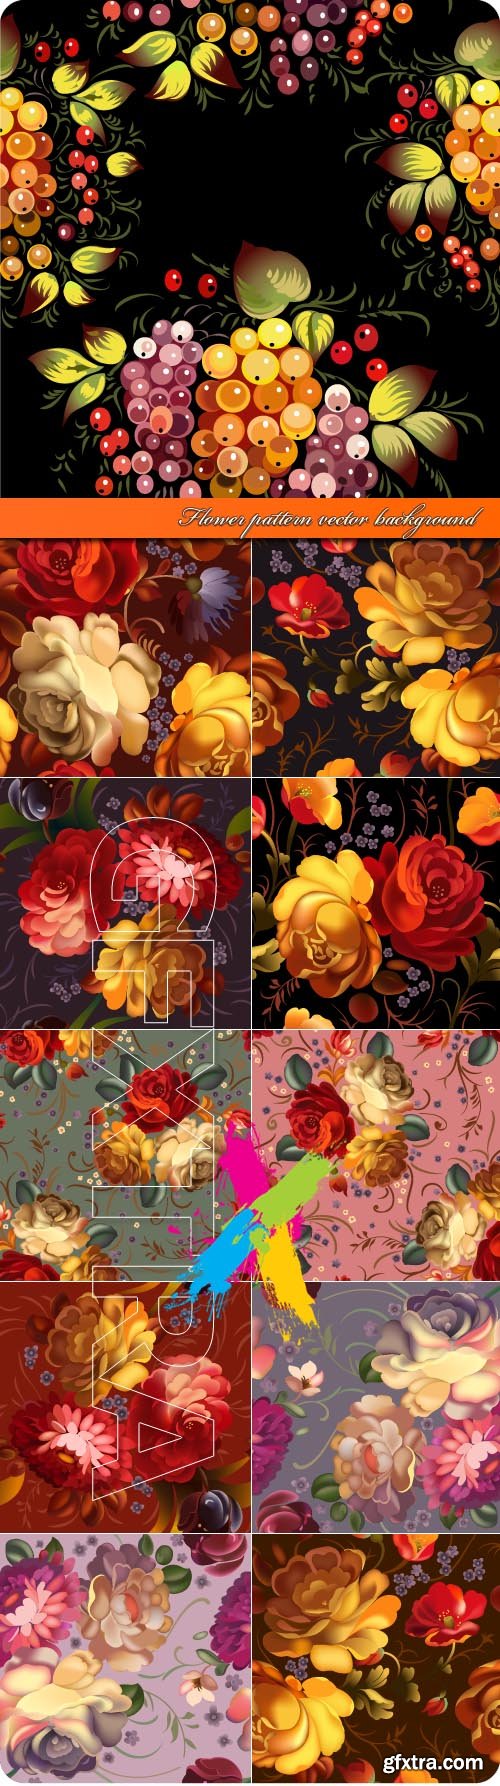 Flower pattern vector background